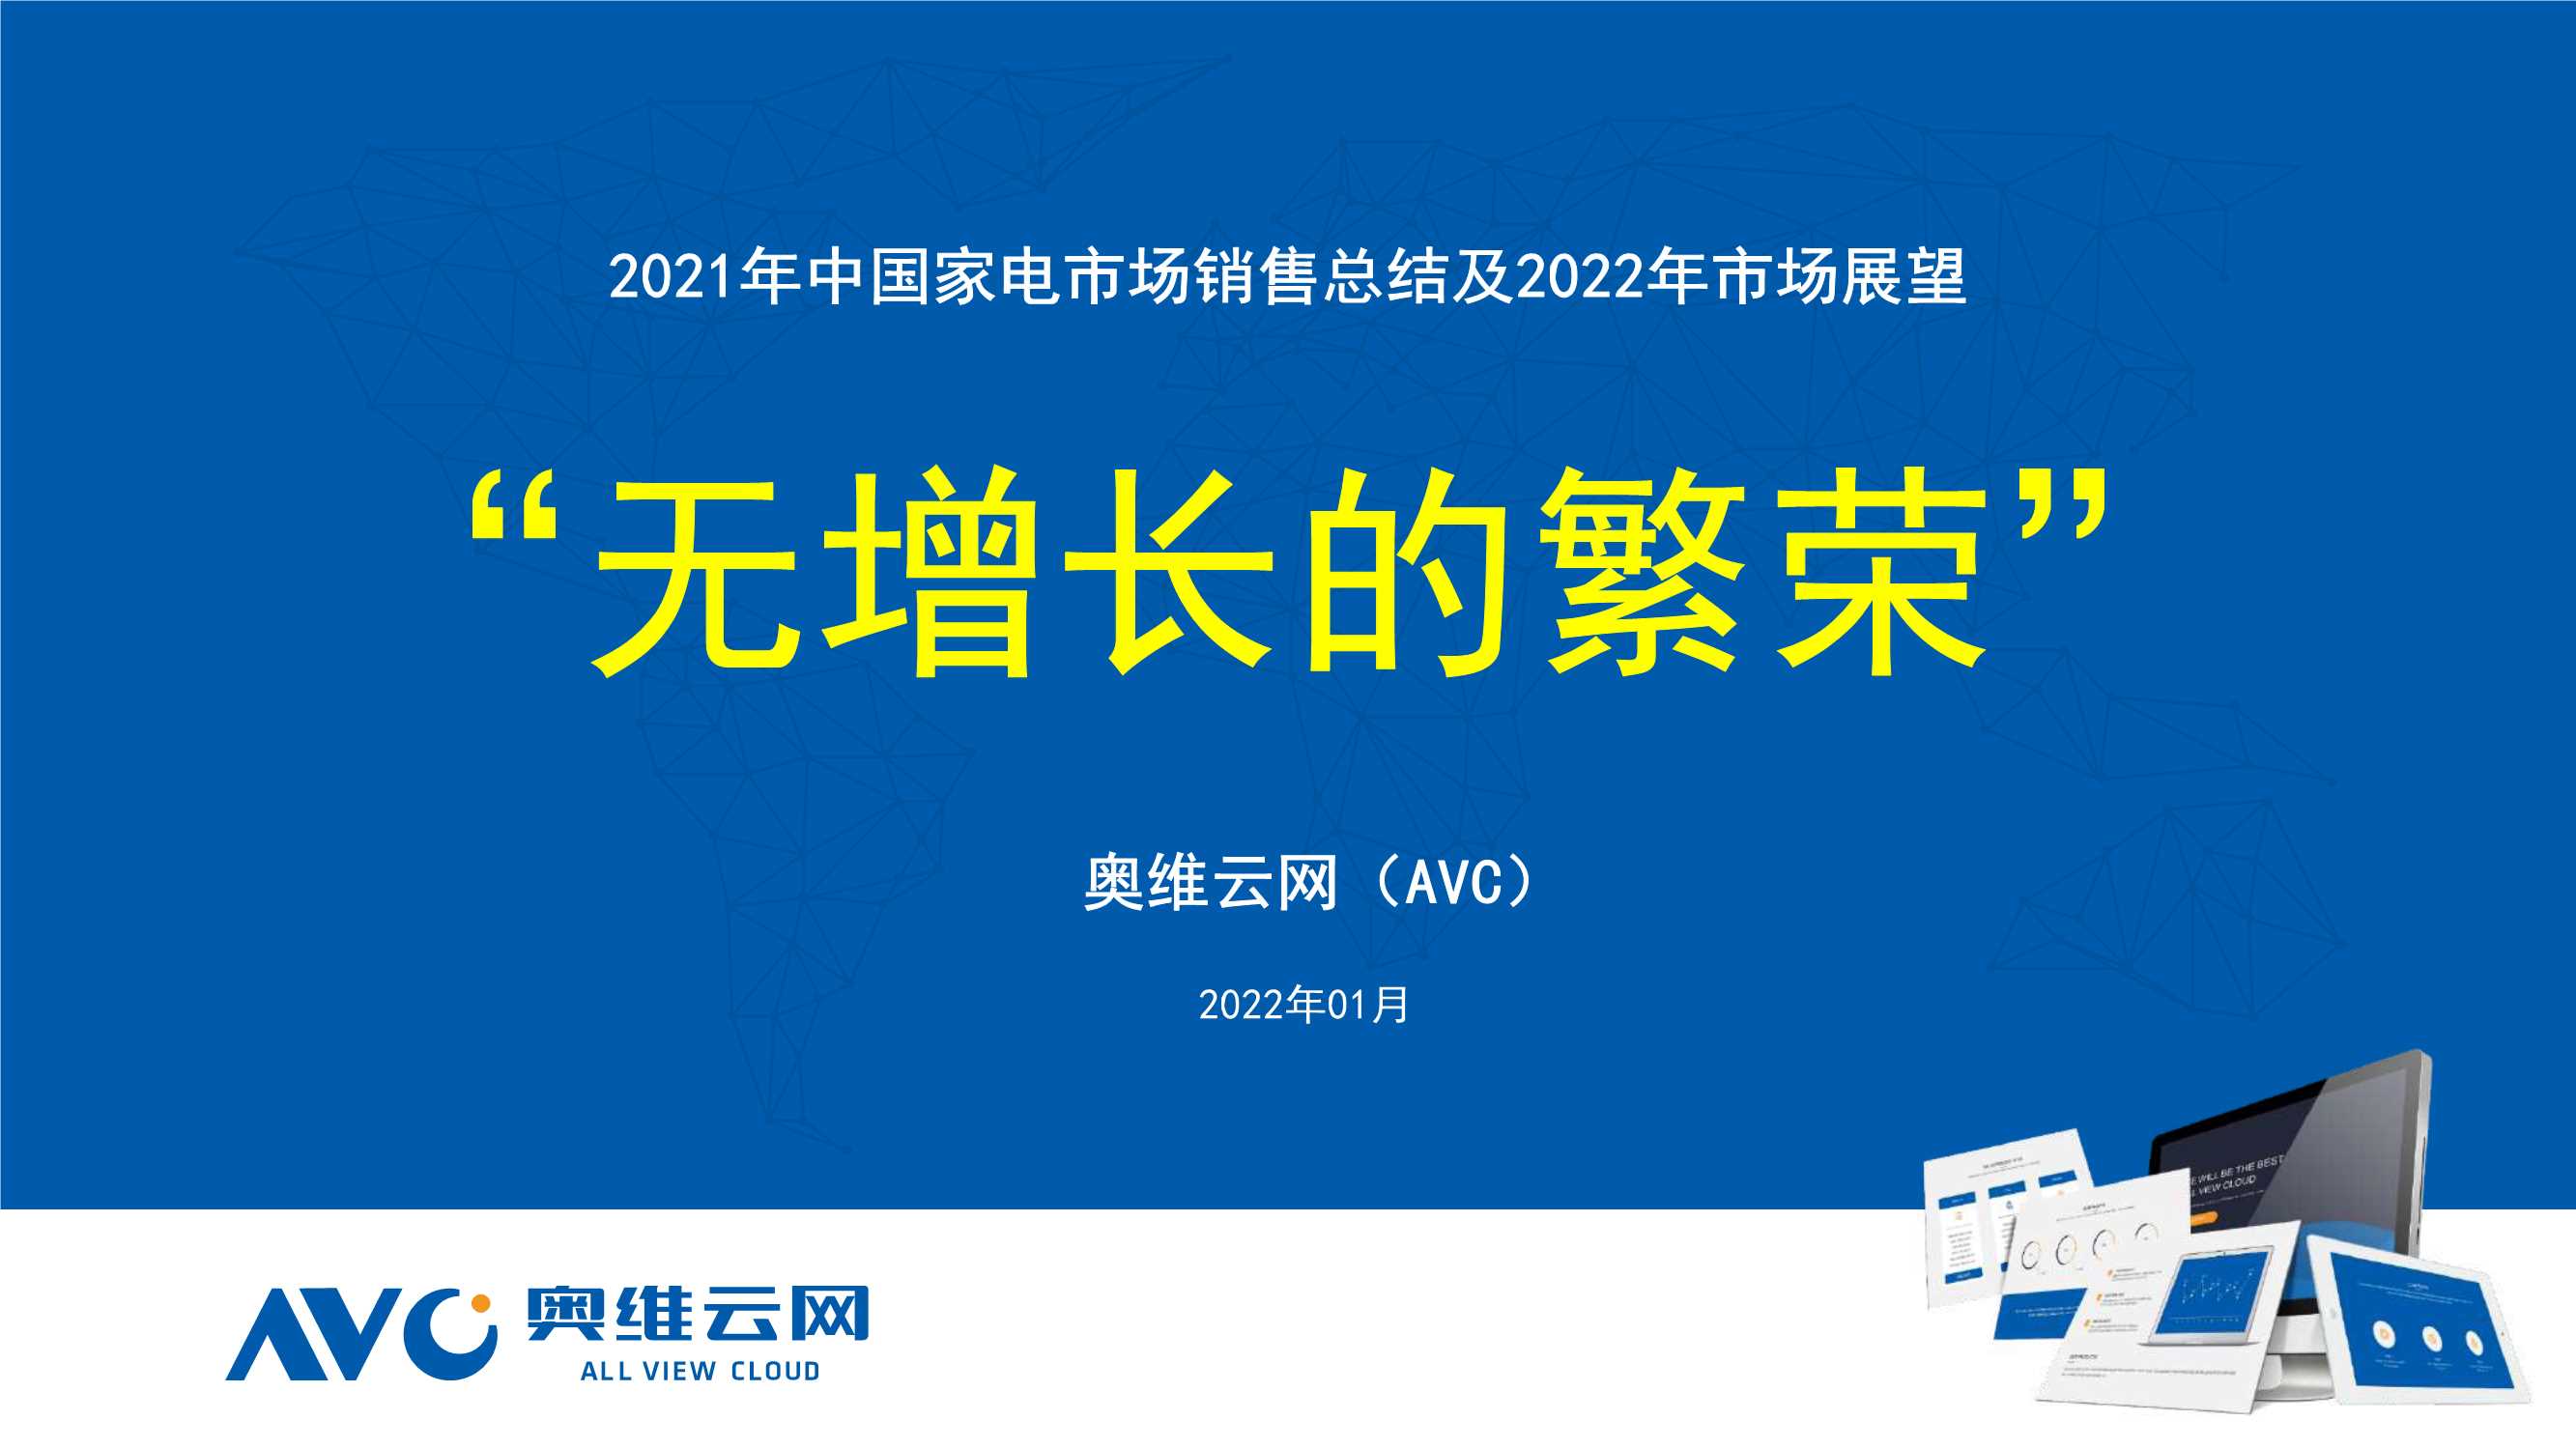 奥维云网-家用电器行业：2021年中国家电市场销售总结及2022年市场展望，“无增长的繁荣”-20220110-25页